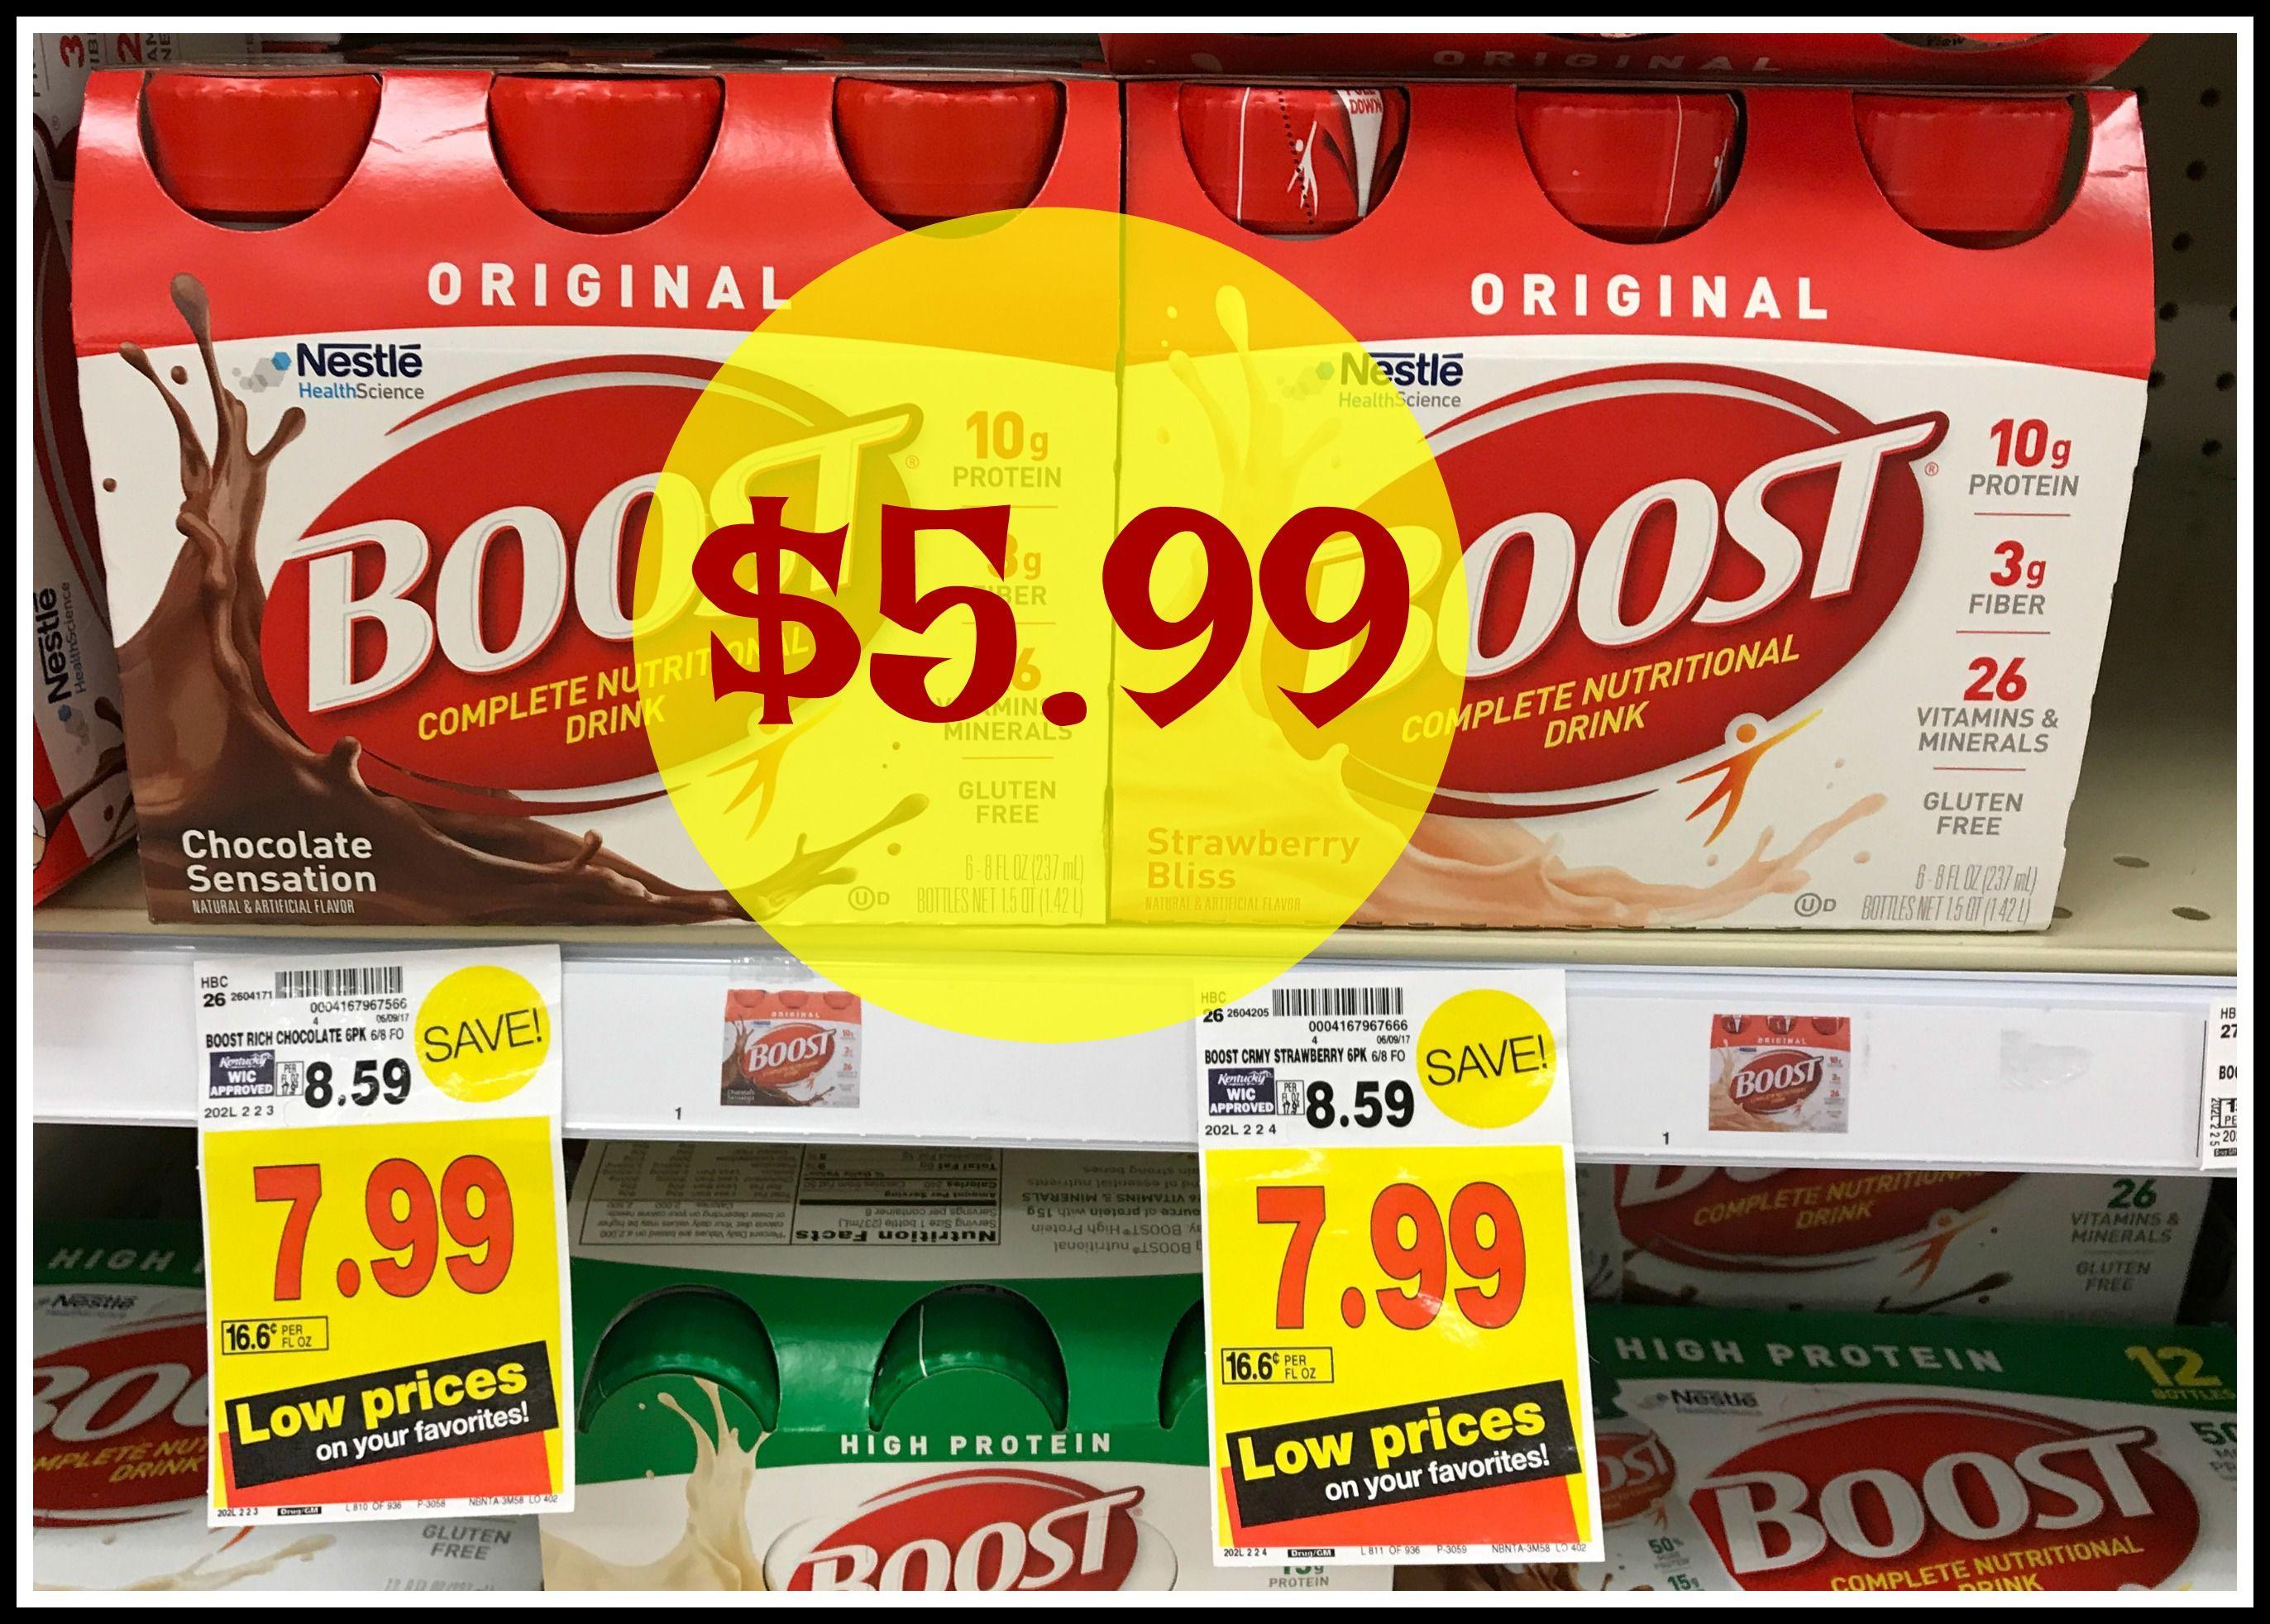 Boost Nutritional Drink Logo - Get Boost Nutritional Drinks for ONLY $5.99 at Kroger! | Kroger Krazy